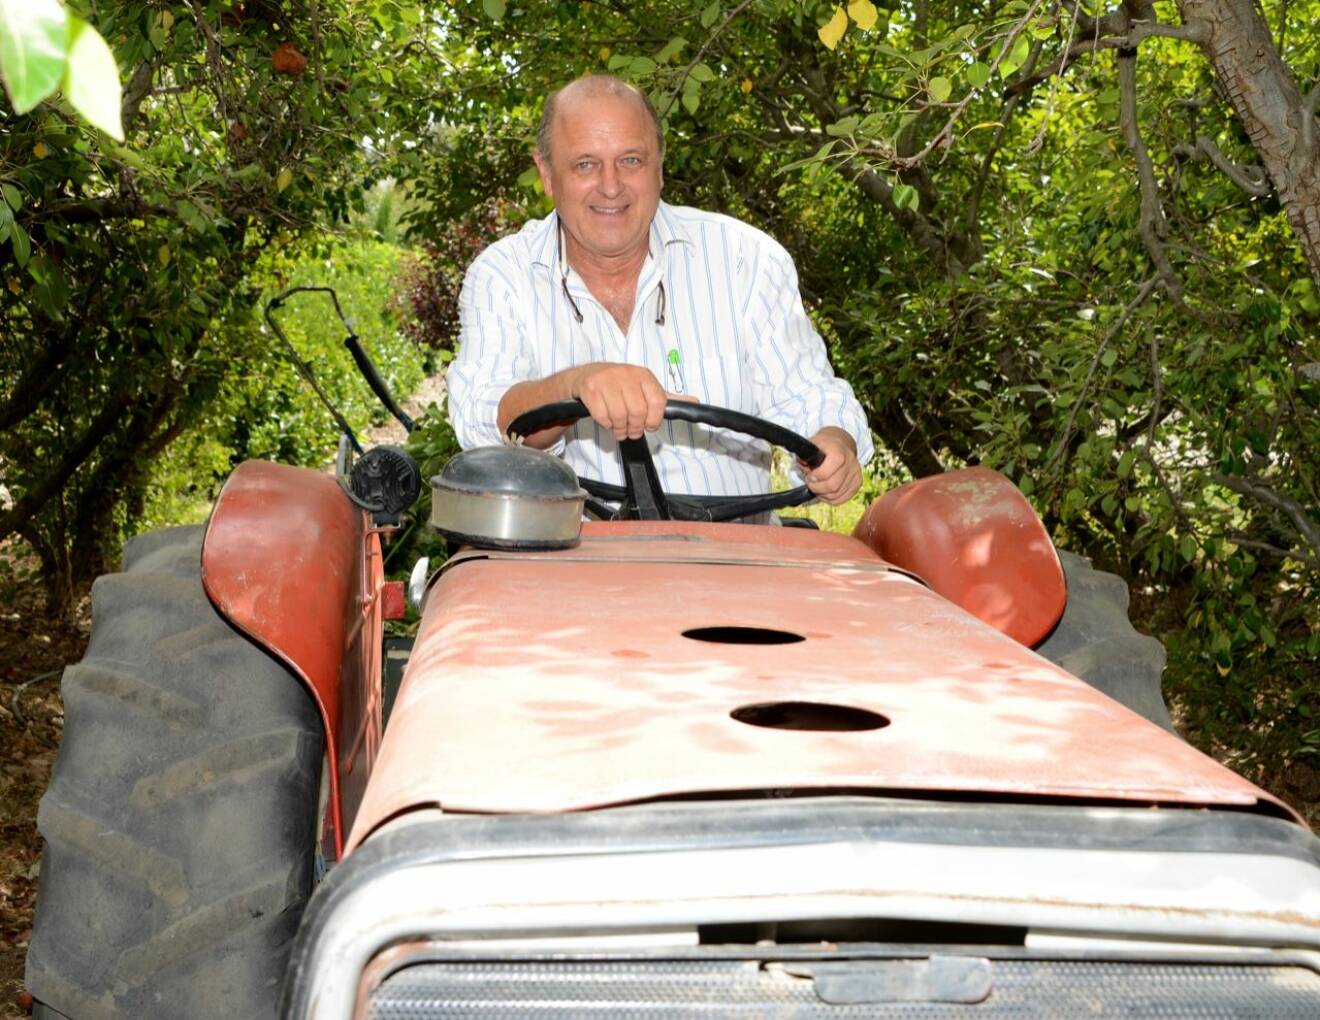 ”Det är här är vår röda Ferrari”, säger Richard från sin traktor.